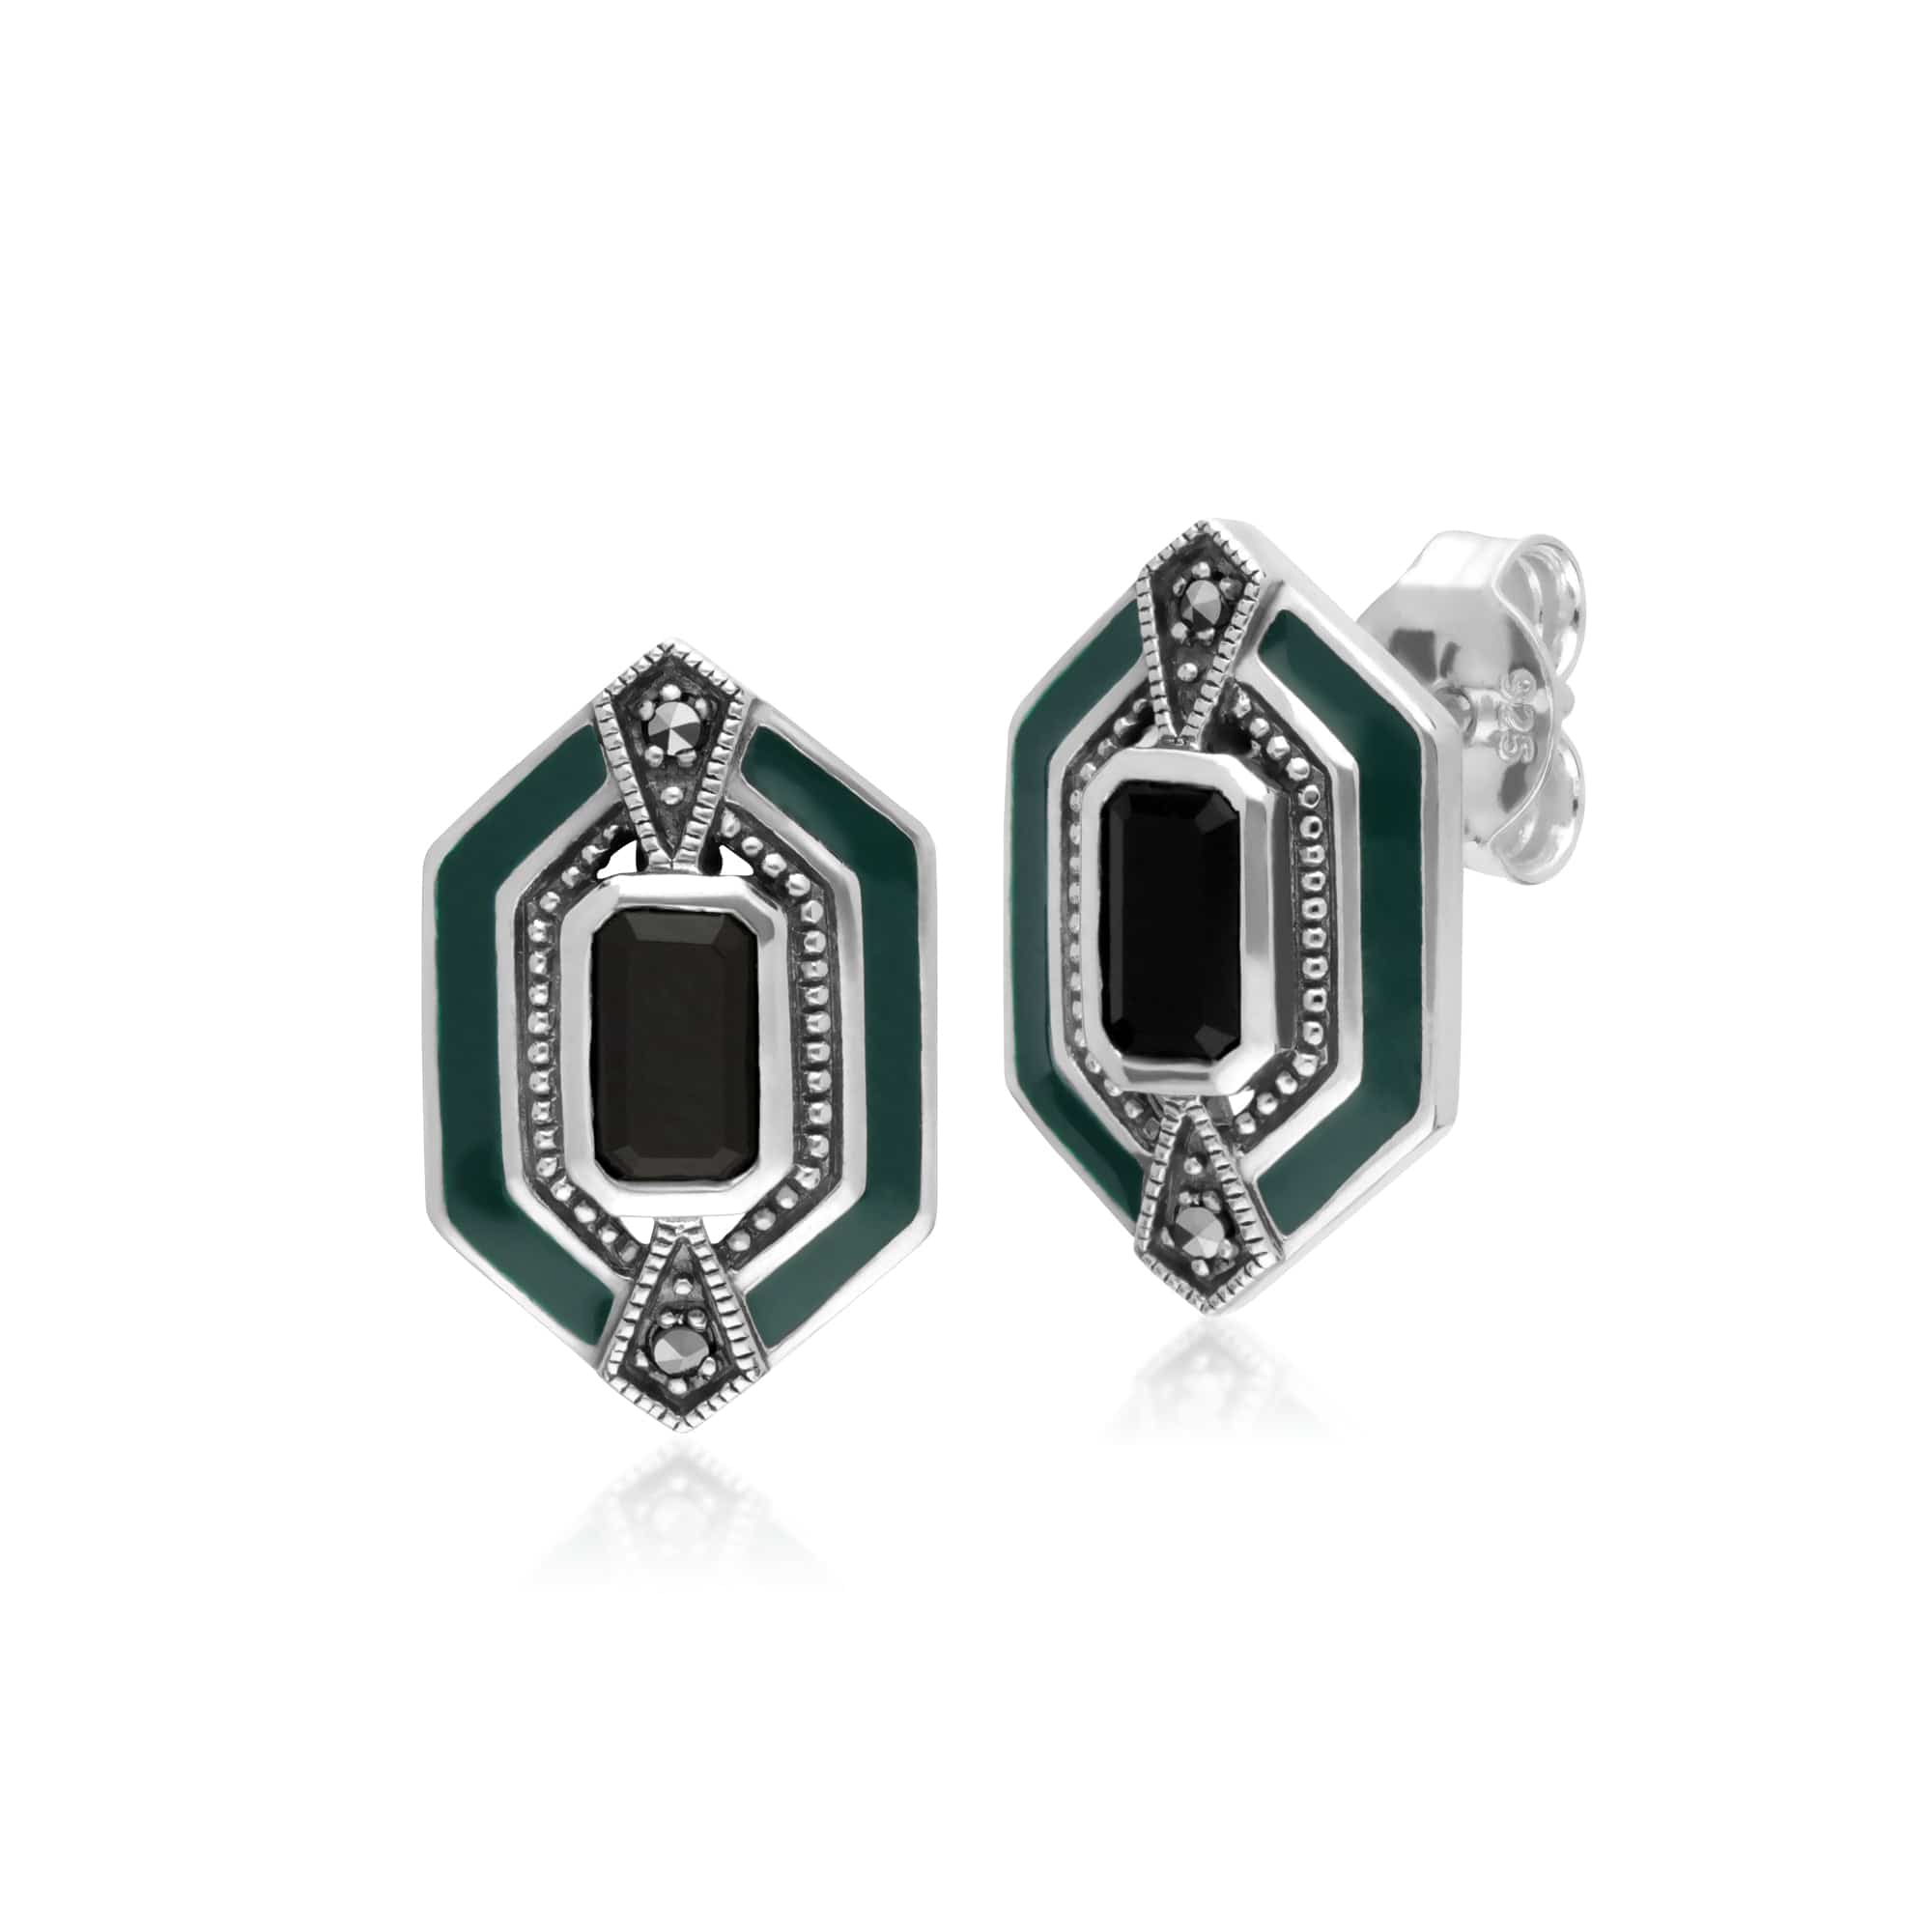 214E868104925-214L164504925 Art Deco Style Black Onyx, Marcasite & Green Enamel Hexagon Stud Earrings & Bracelet Set in 925 Sterling Silver 2